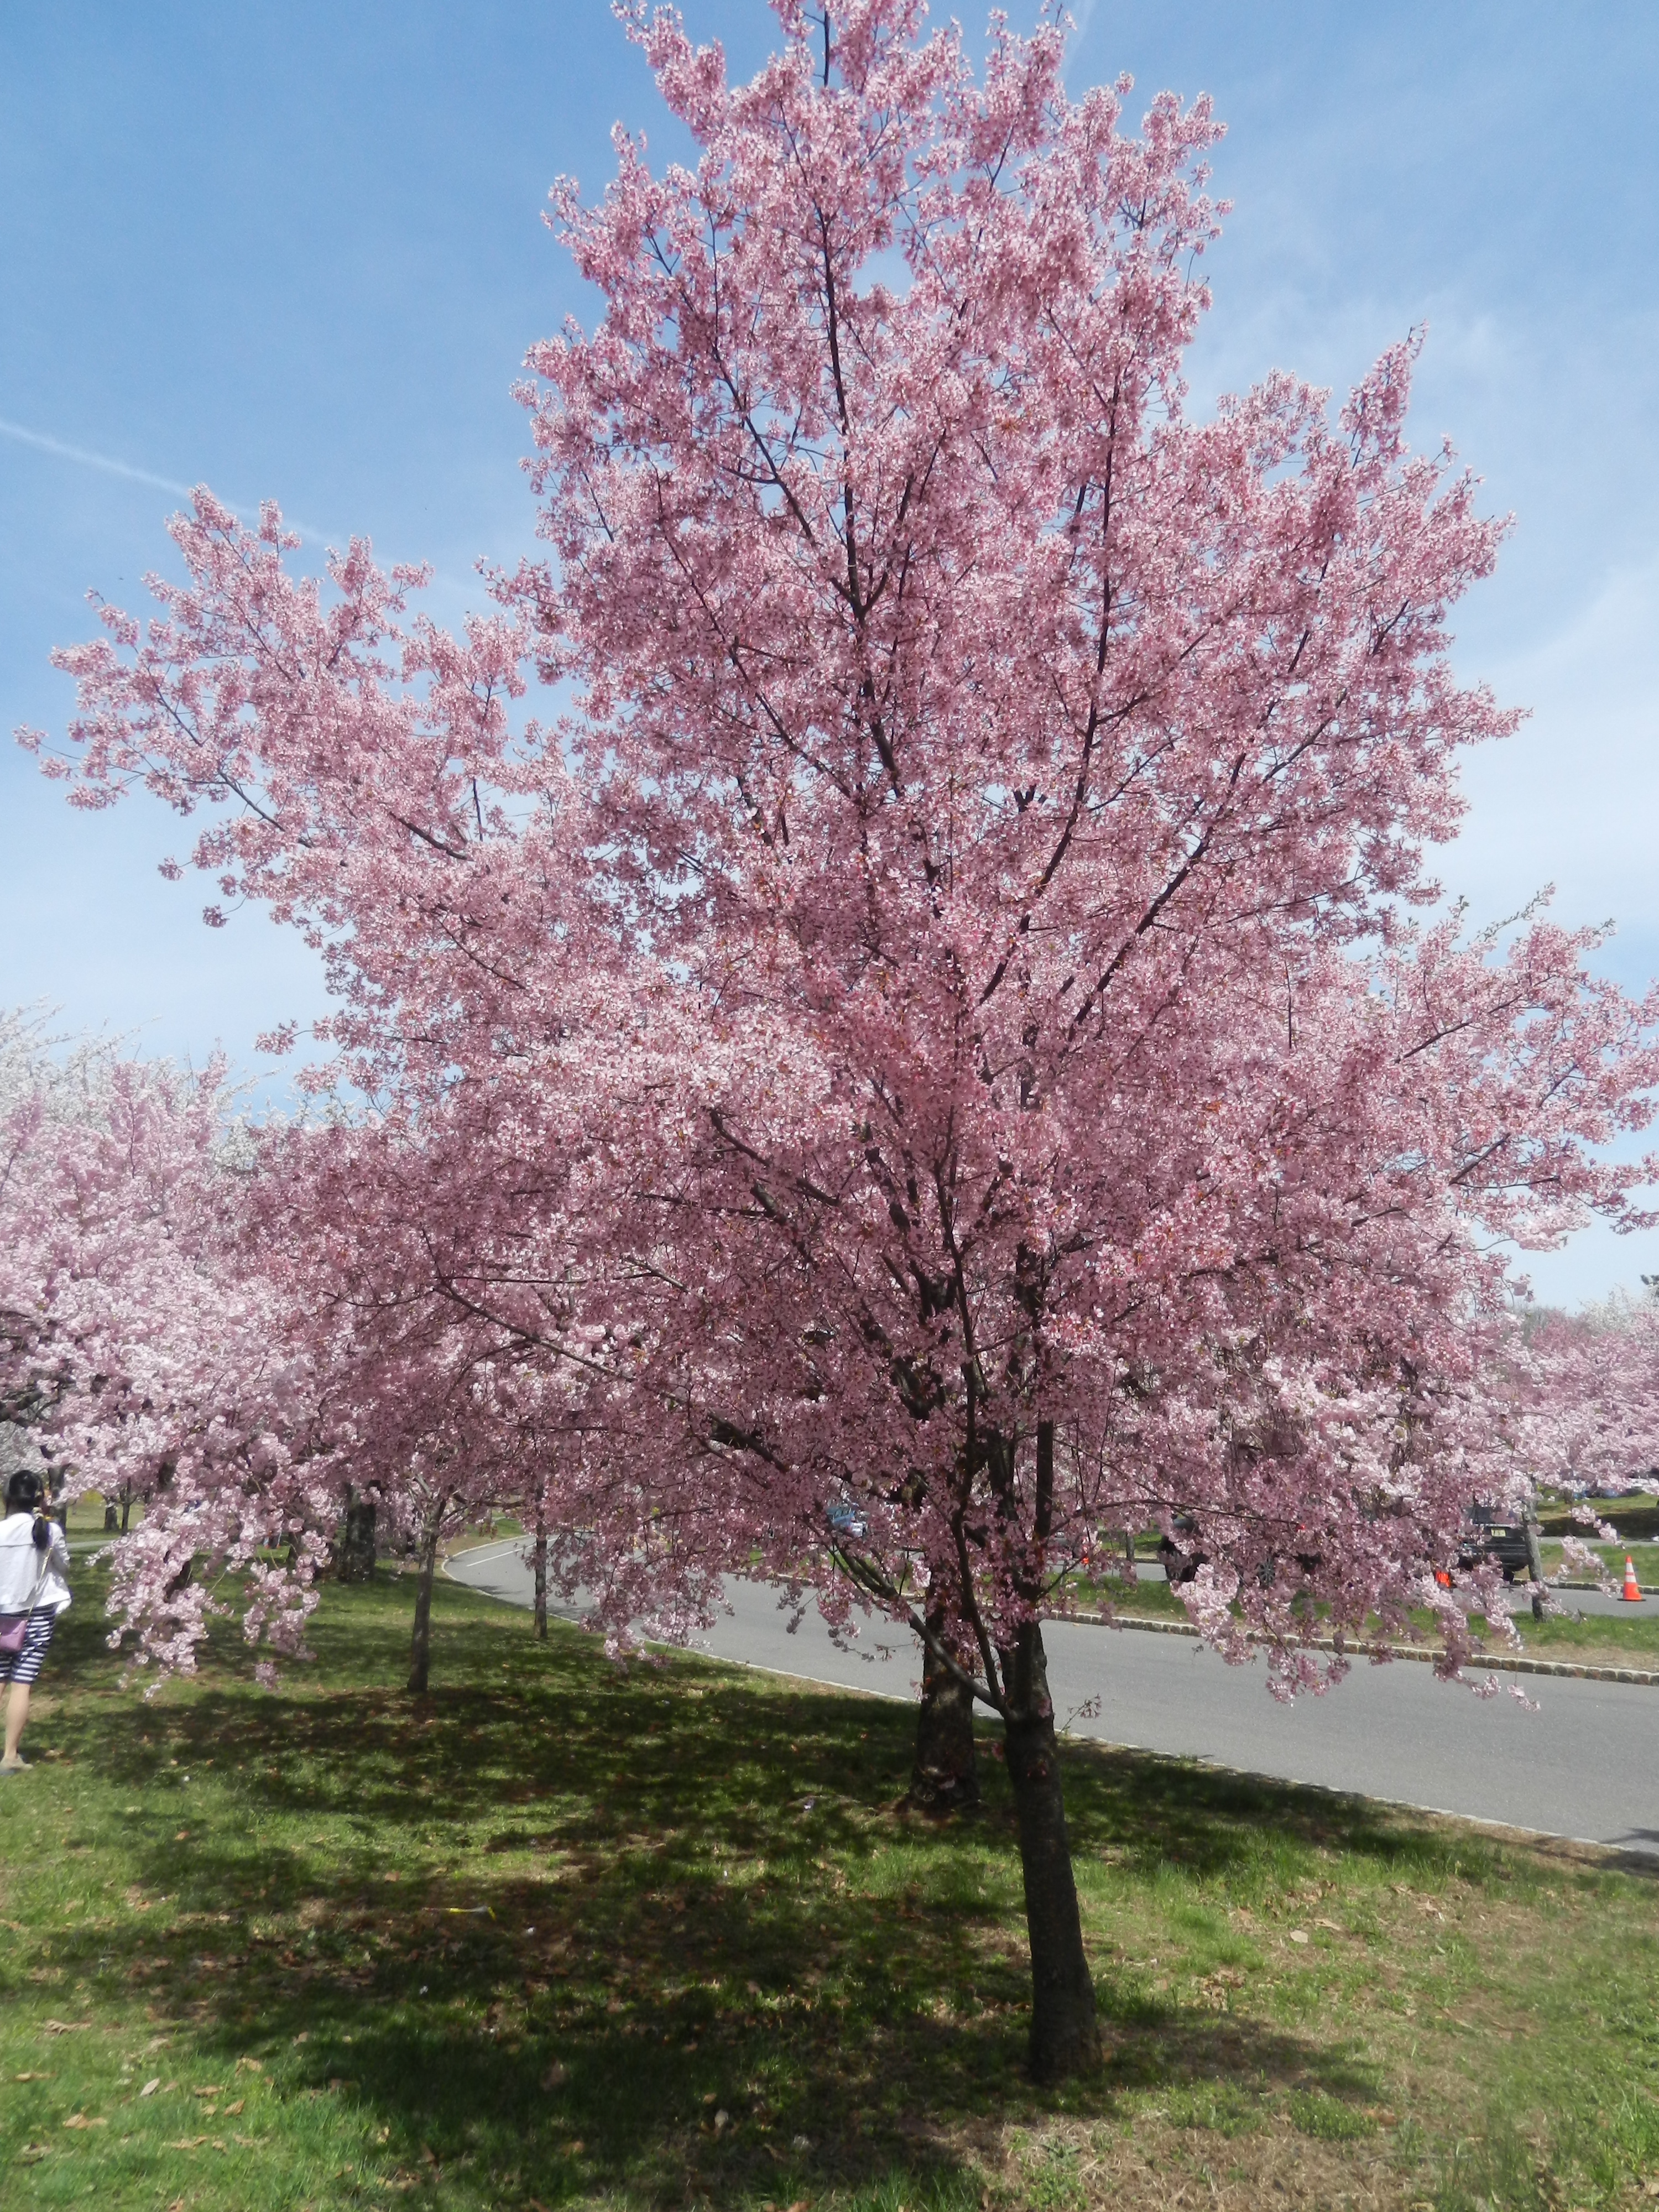 Newark Cherry Blossom Festival and Vegan Meals Vegan World Trekker